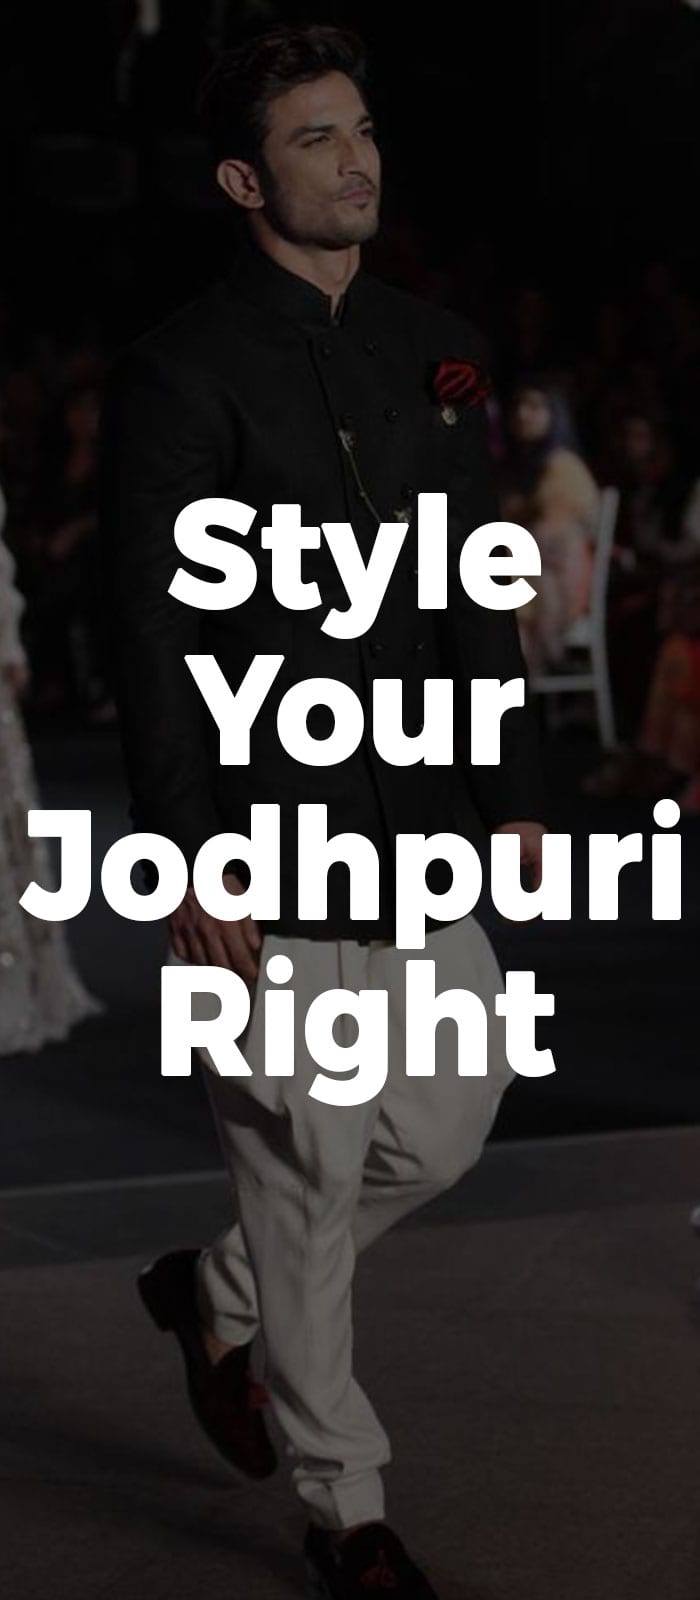 Style Your Jodhpuri Right